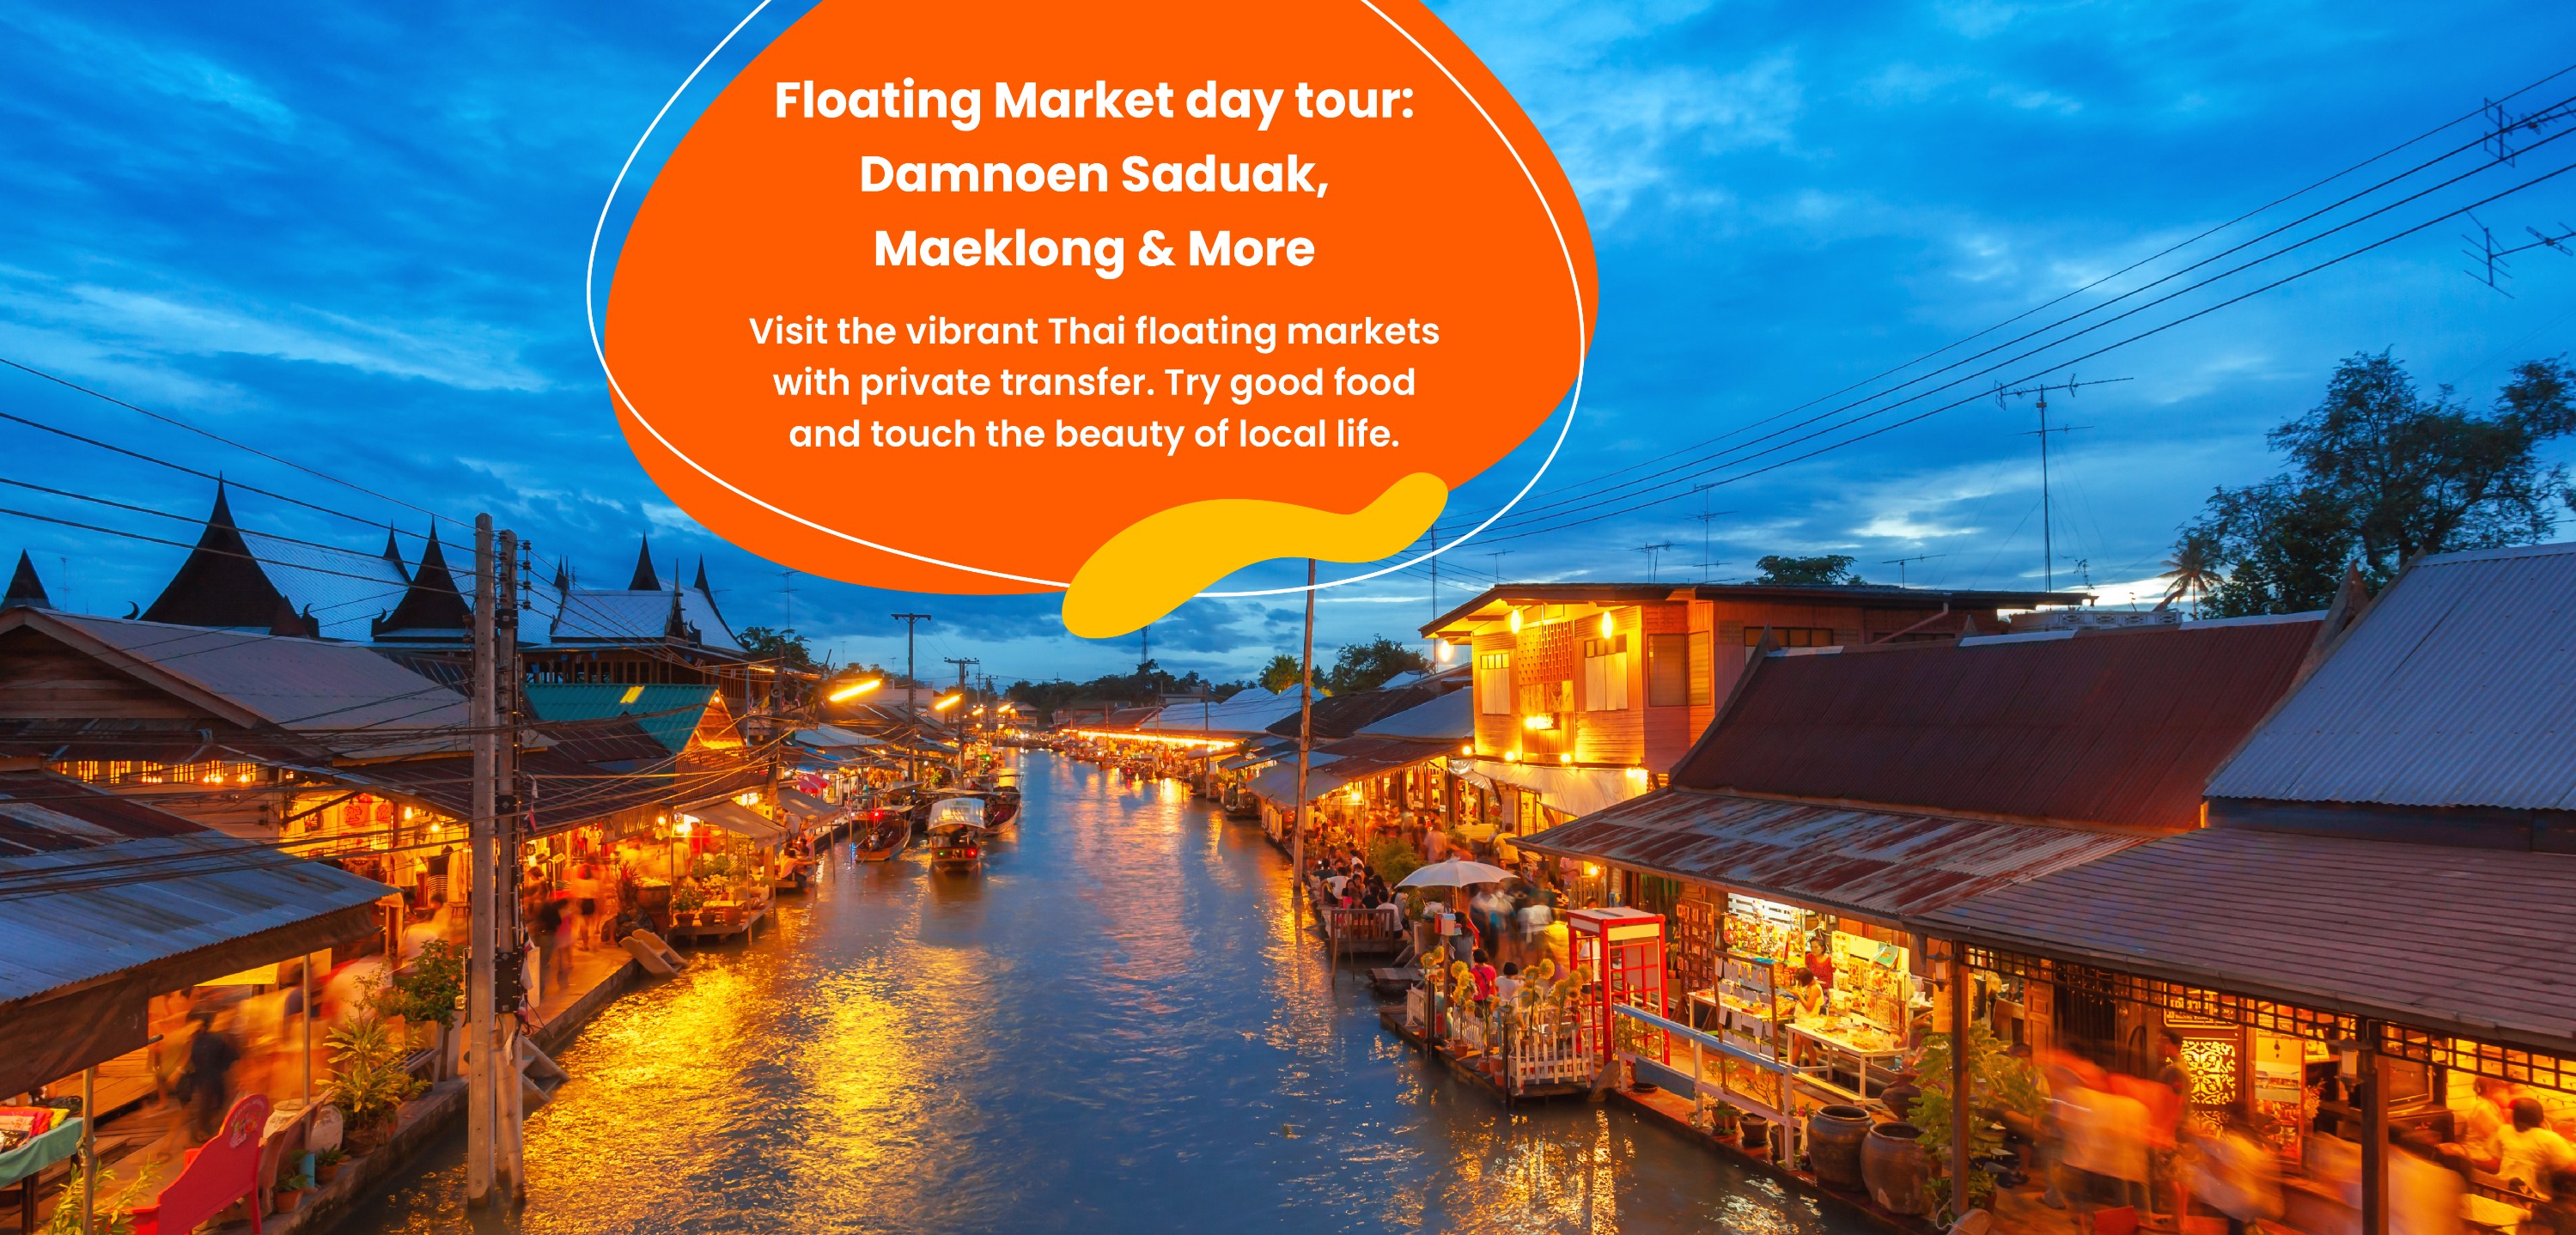 曼谷水上市場一日遊：丹嫩莎朵水上市場＆美功鐵道市場＆其他景點